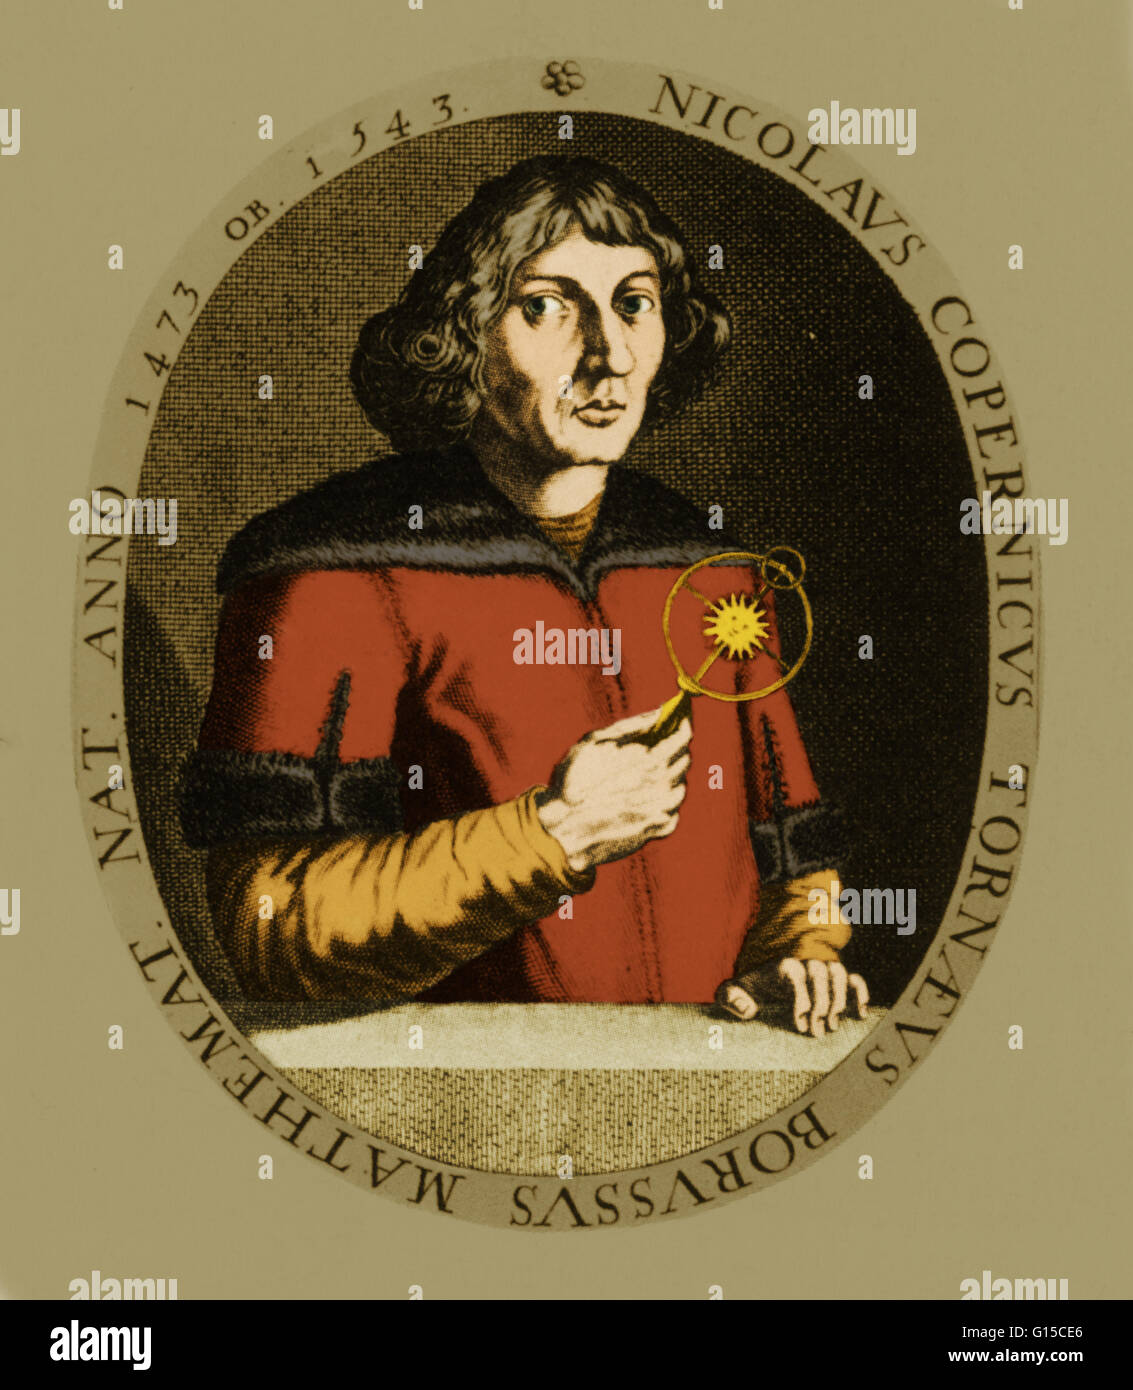 Nicolaus Copernicus (Febbraio 19, 1473 - 24 Maggio 1543) era un rinascimento polacco matematico e astronomo di una discesa prussiana, che hanno formulato un modello dell'universo che pone il Sole piuttosto che la Terra al centro dell'universo. Questo syste Foto Stock